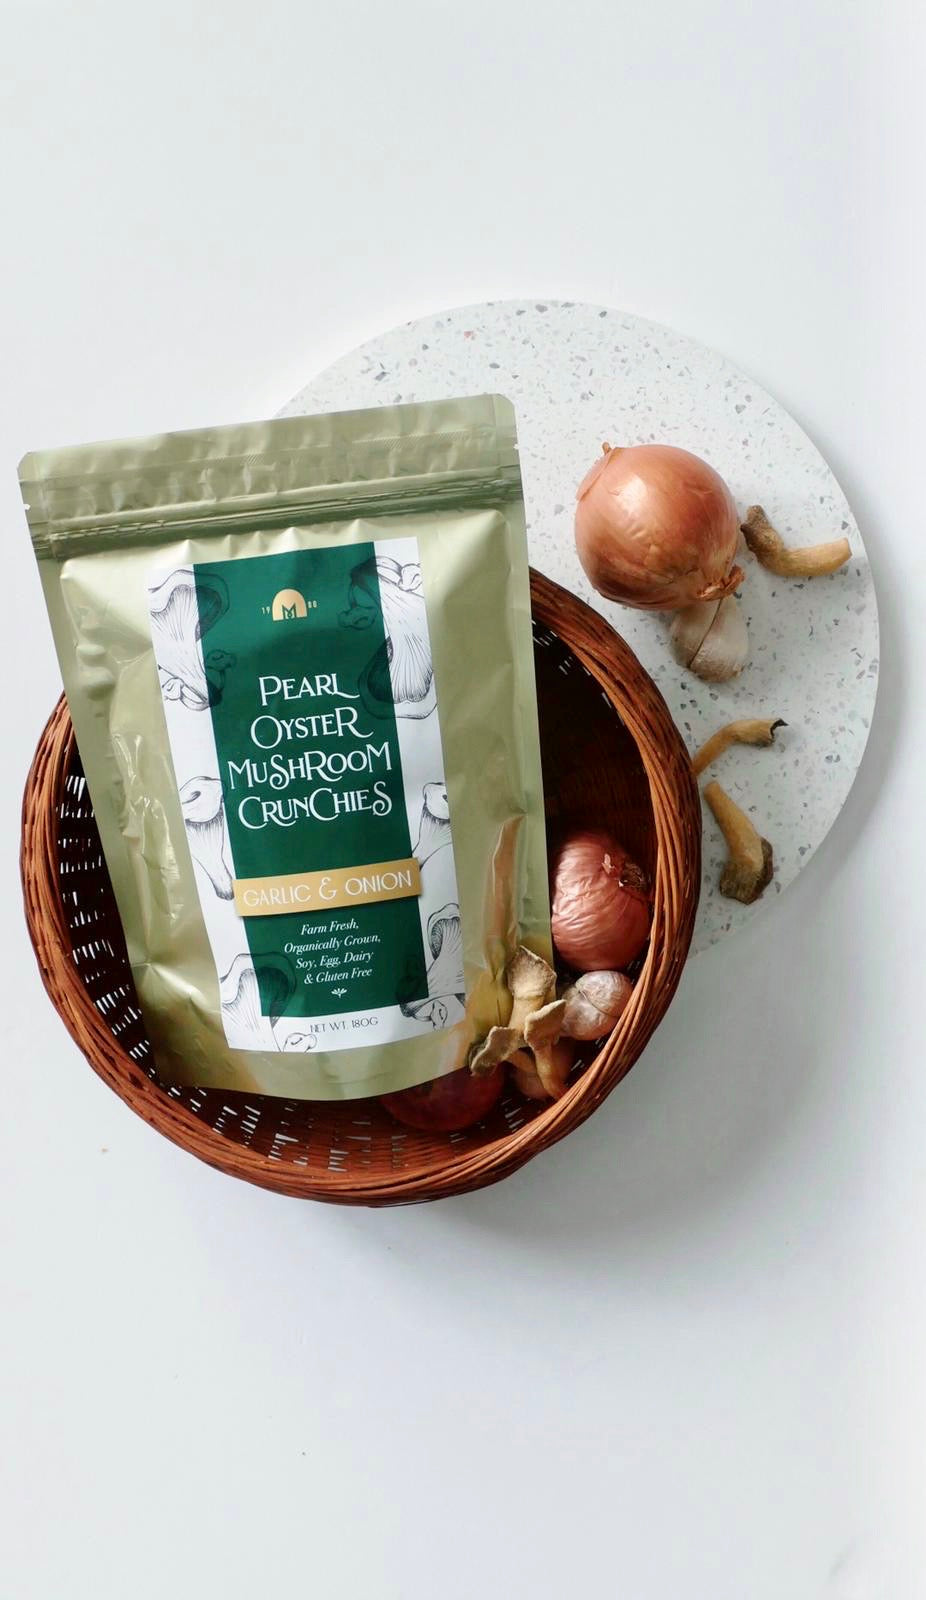 TMF Pearl Oyster Mushroom Crunchies - Garlic & Onion